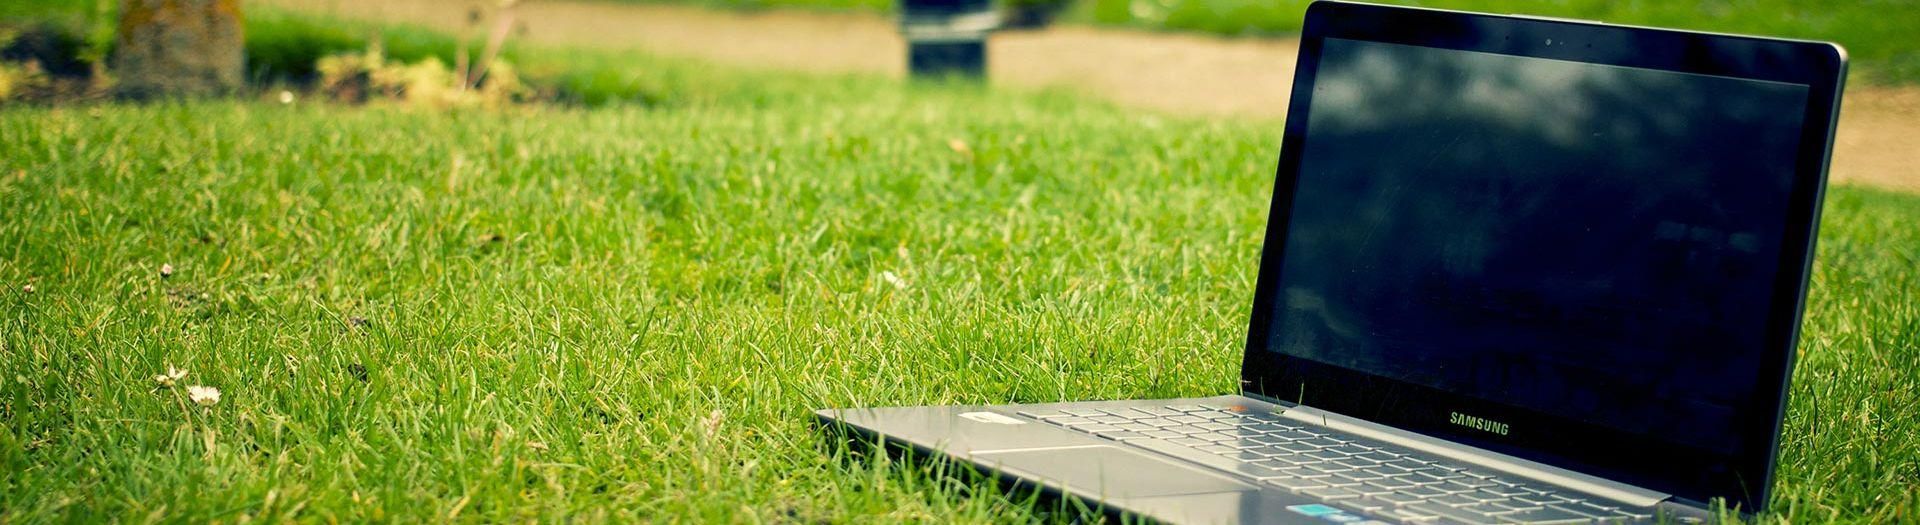 laptop-notebook-grass-meadow-9b558d75 Maatwerk Portaal | BRIGHT Software B.V.